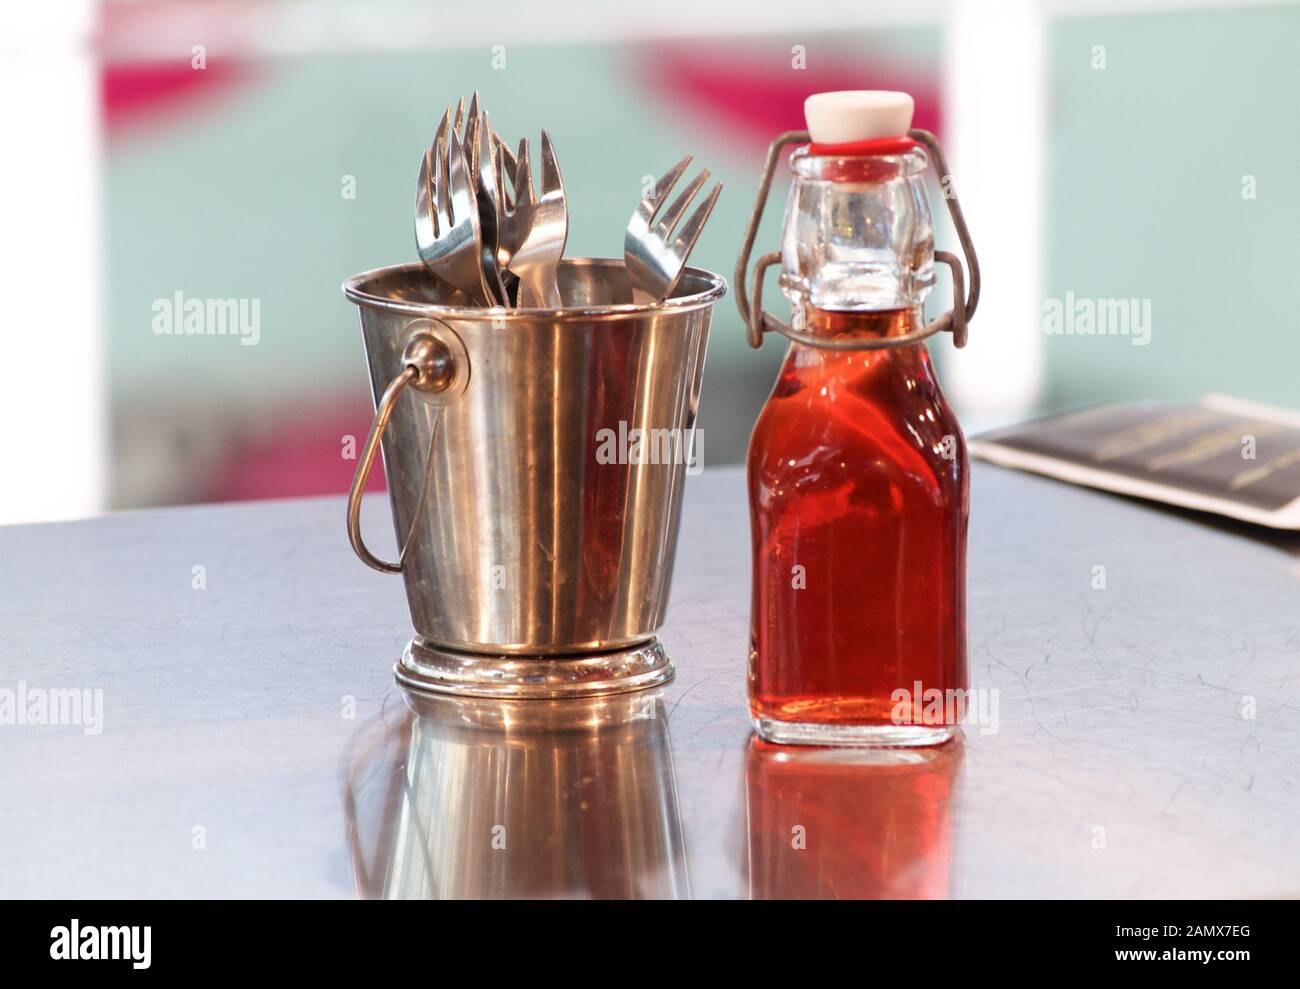 Besteck in einem bronzenen Schaufel und eine Flasche roten Trauben Essig auf einer glatten Oberfläche auf einem Fischmarkt gespiegelt Stockfoto